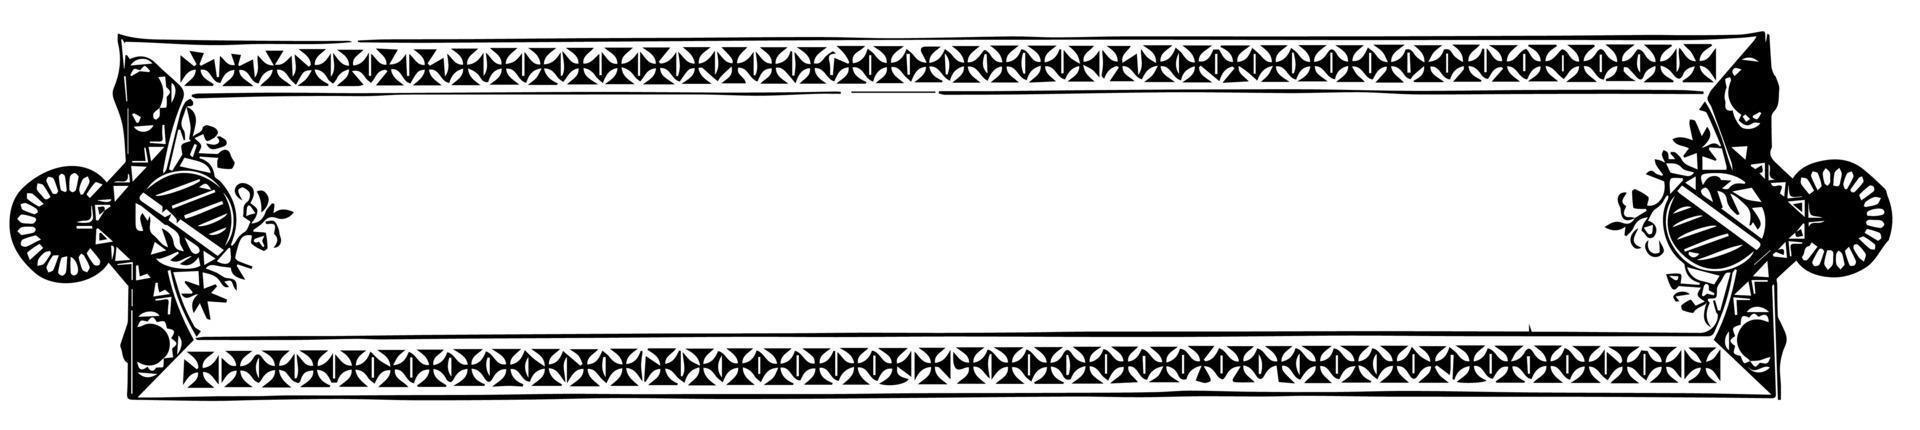 Ornate banner have traditional design border, vintage engraving. vector